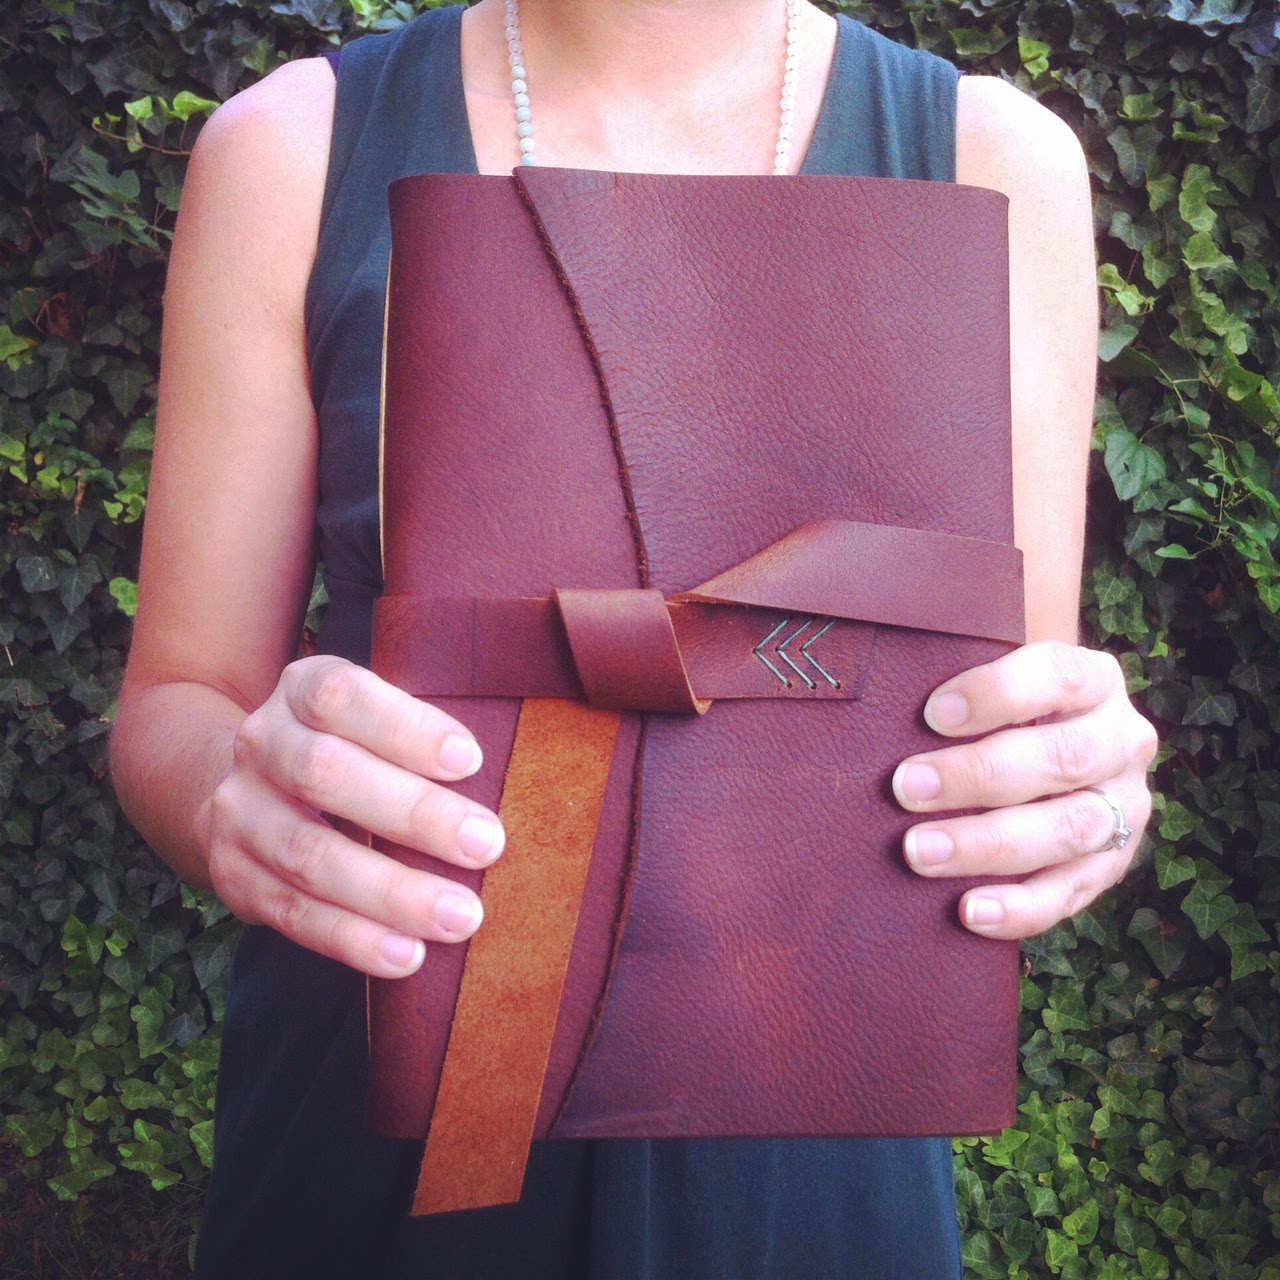 Handbound leather journal by Katie Gonzalez